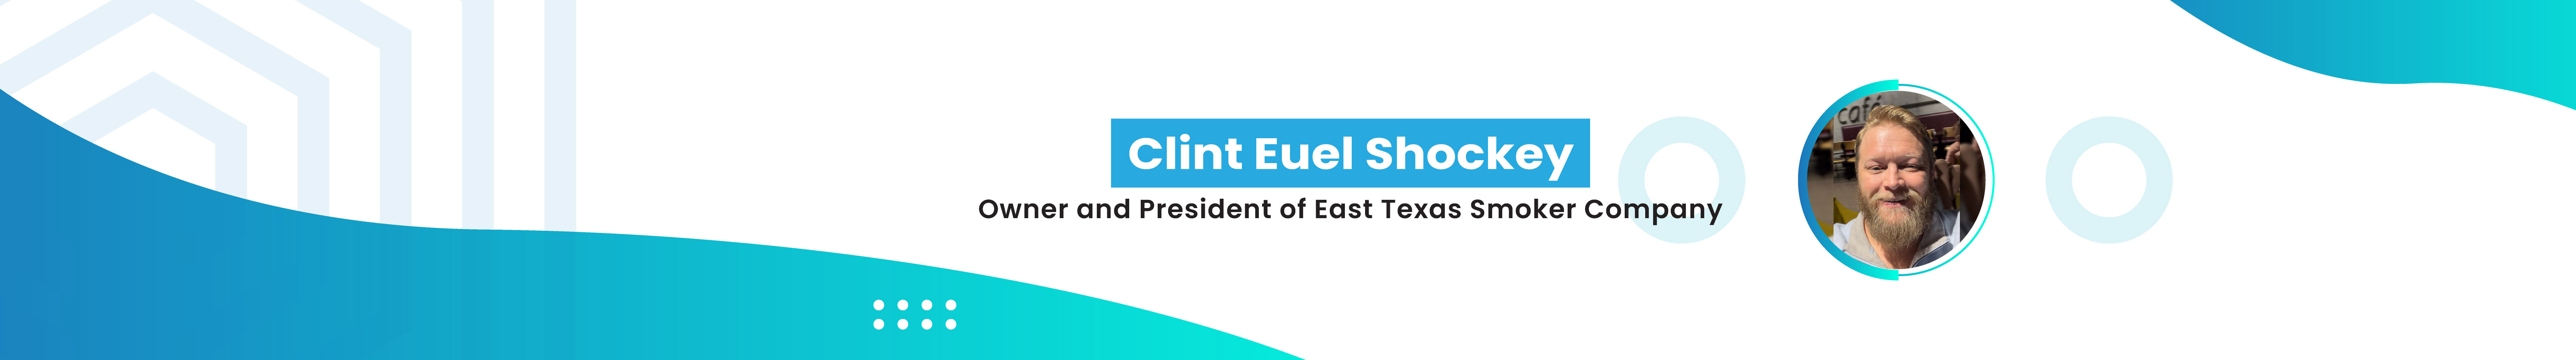 Clint Euel Shockey profil başlığı